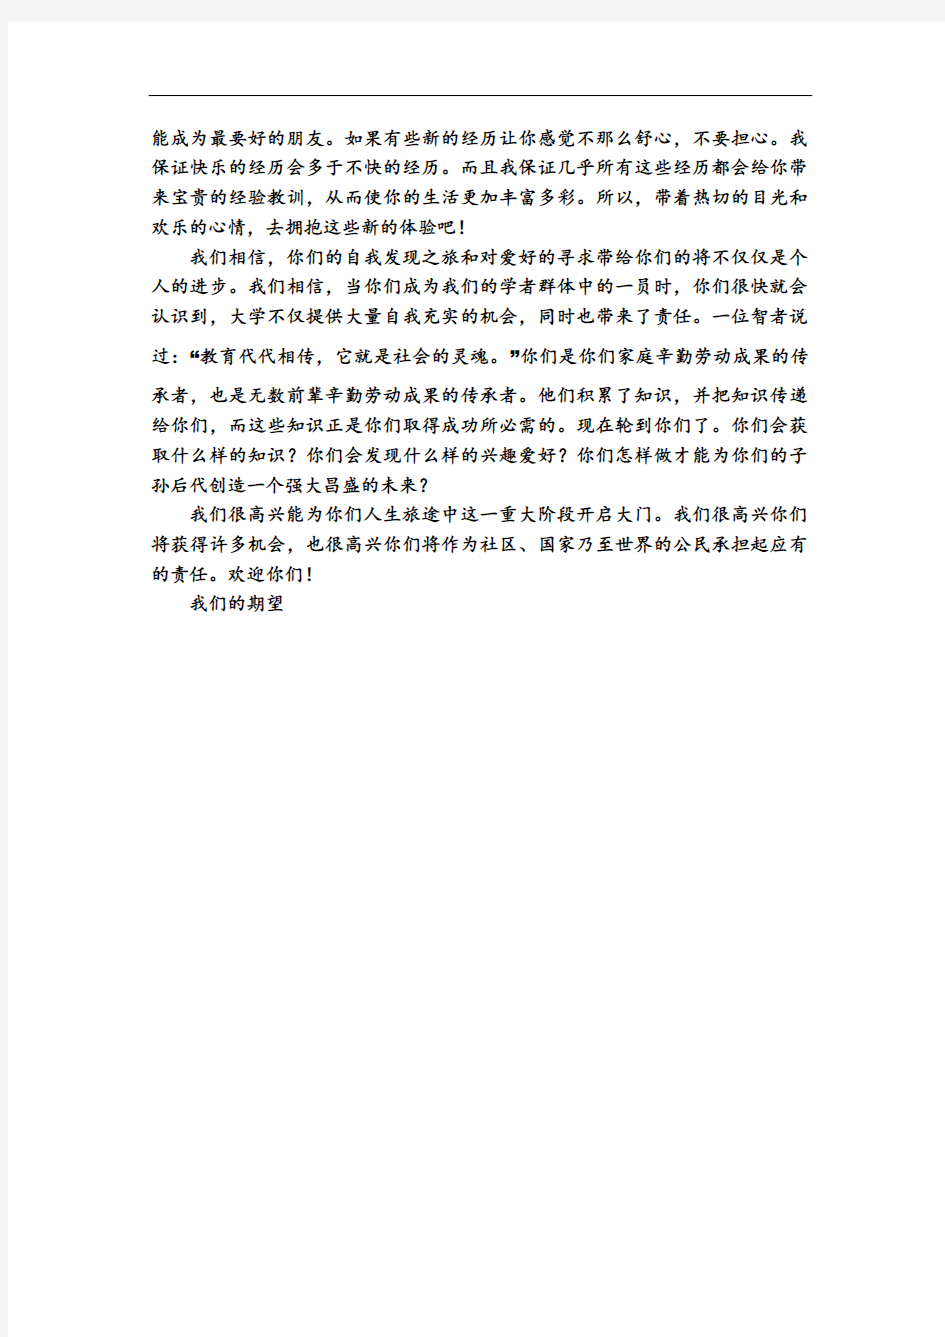 新视野一 第一单元 原文与翻译 汉语翻译版